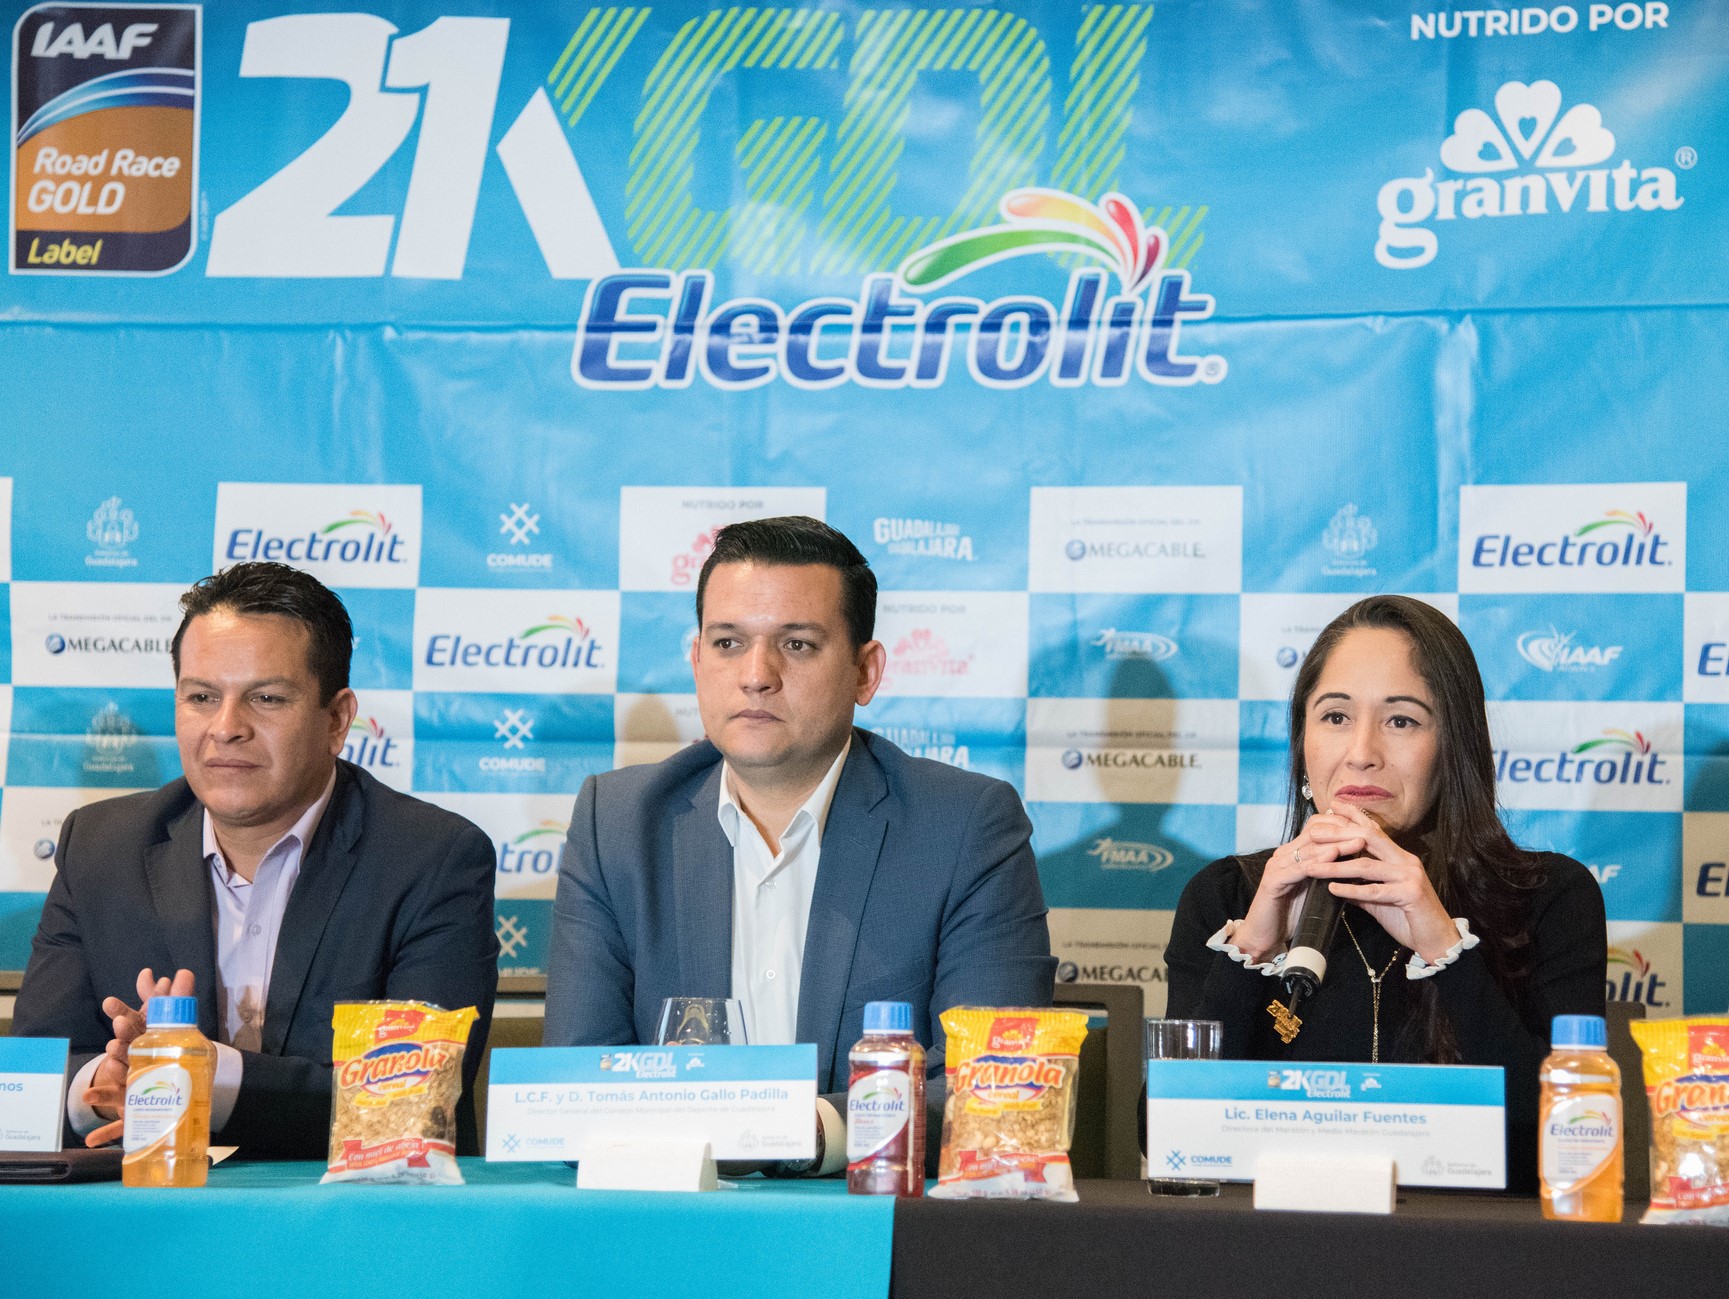 playera del 21K Guadalajara Electrolit nutrido por Granvita 2019, medio maratón guadalajara